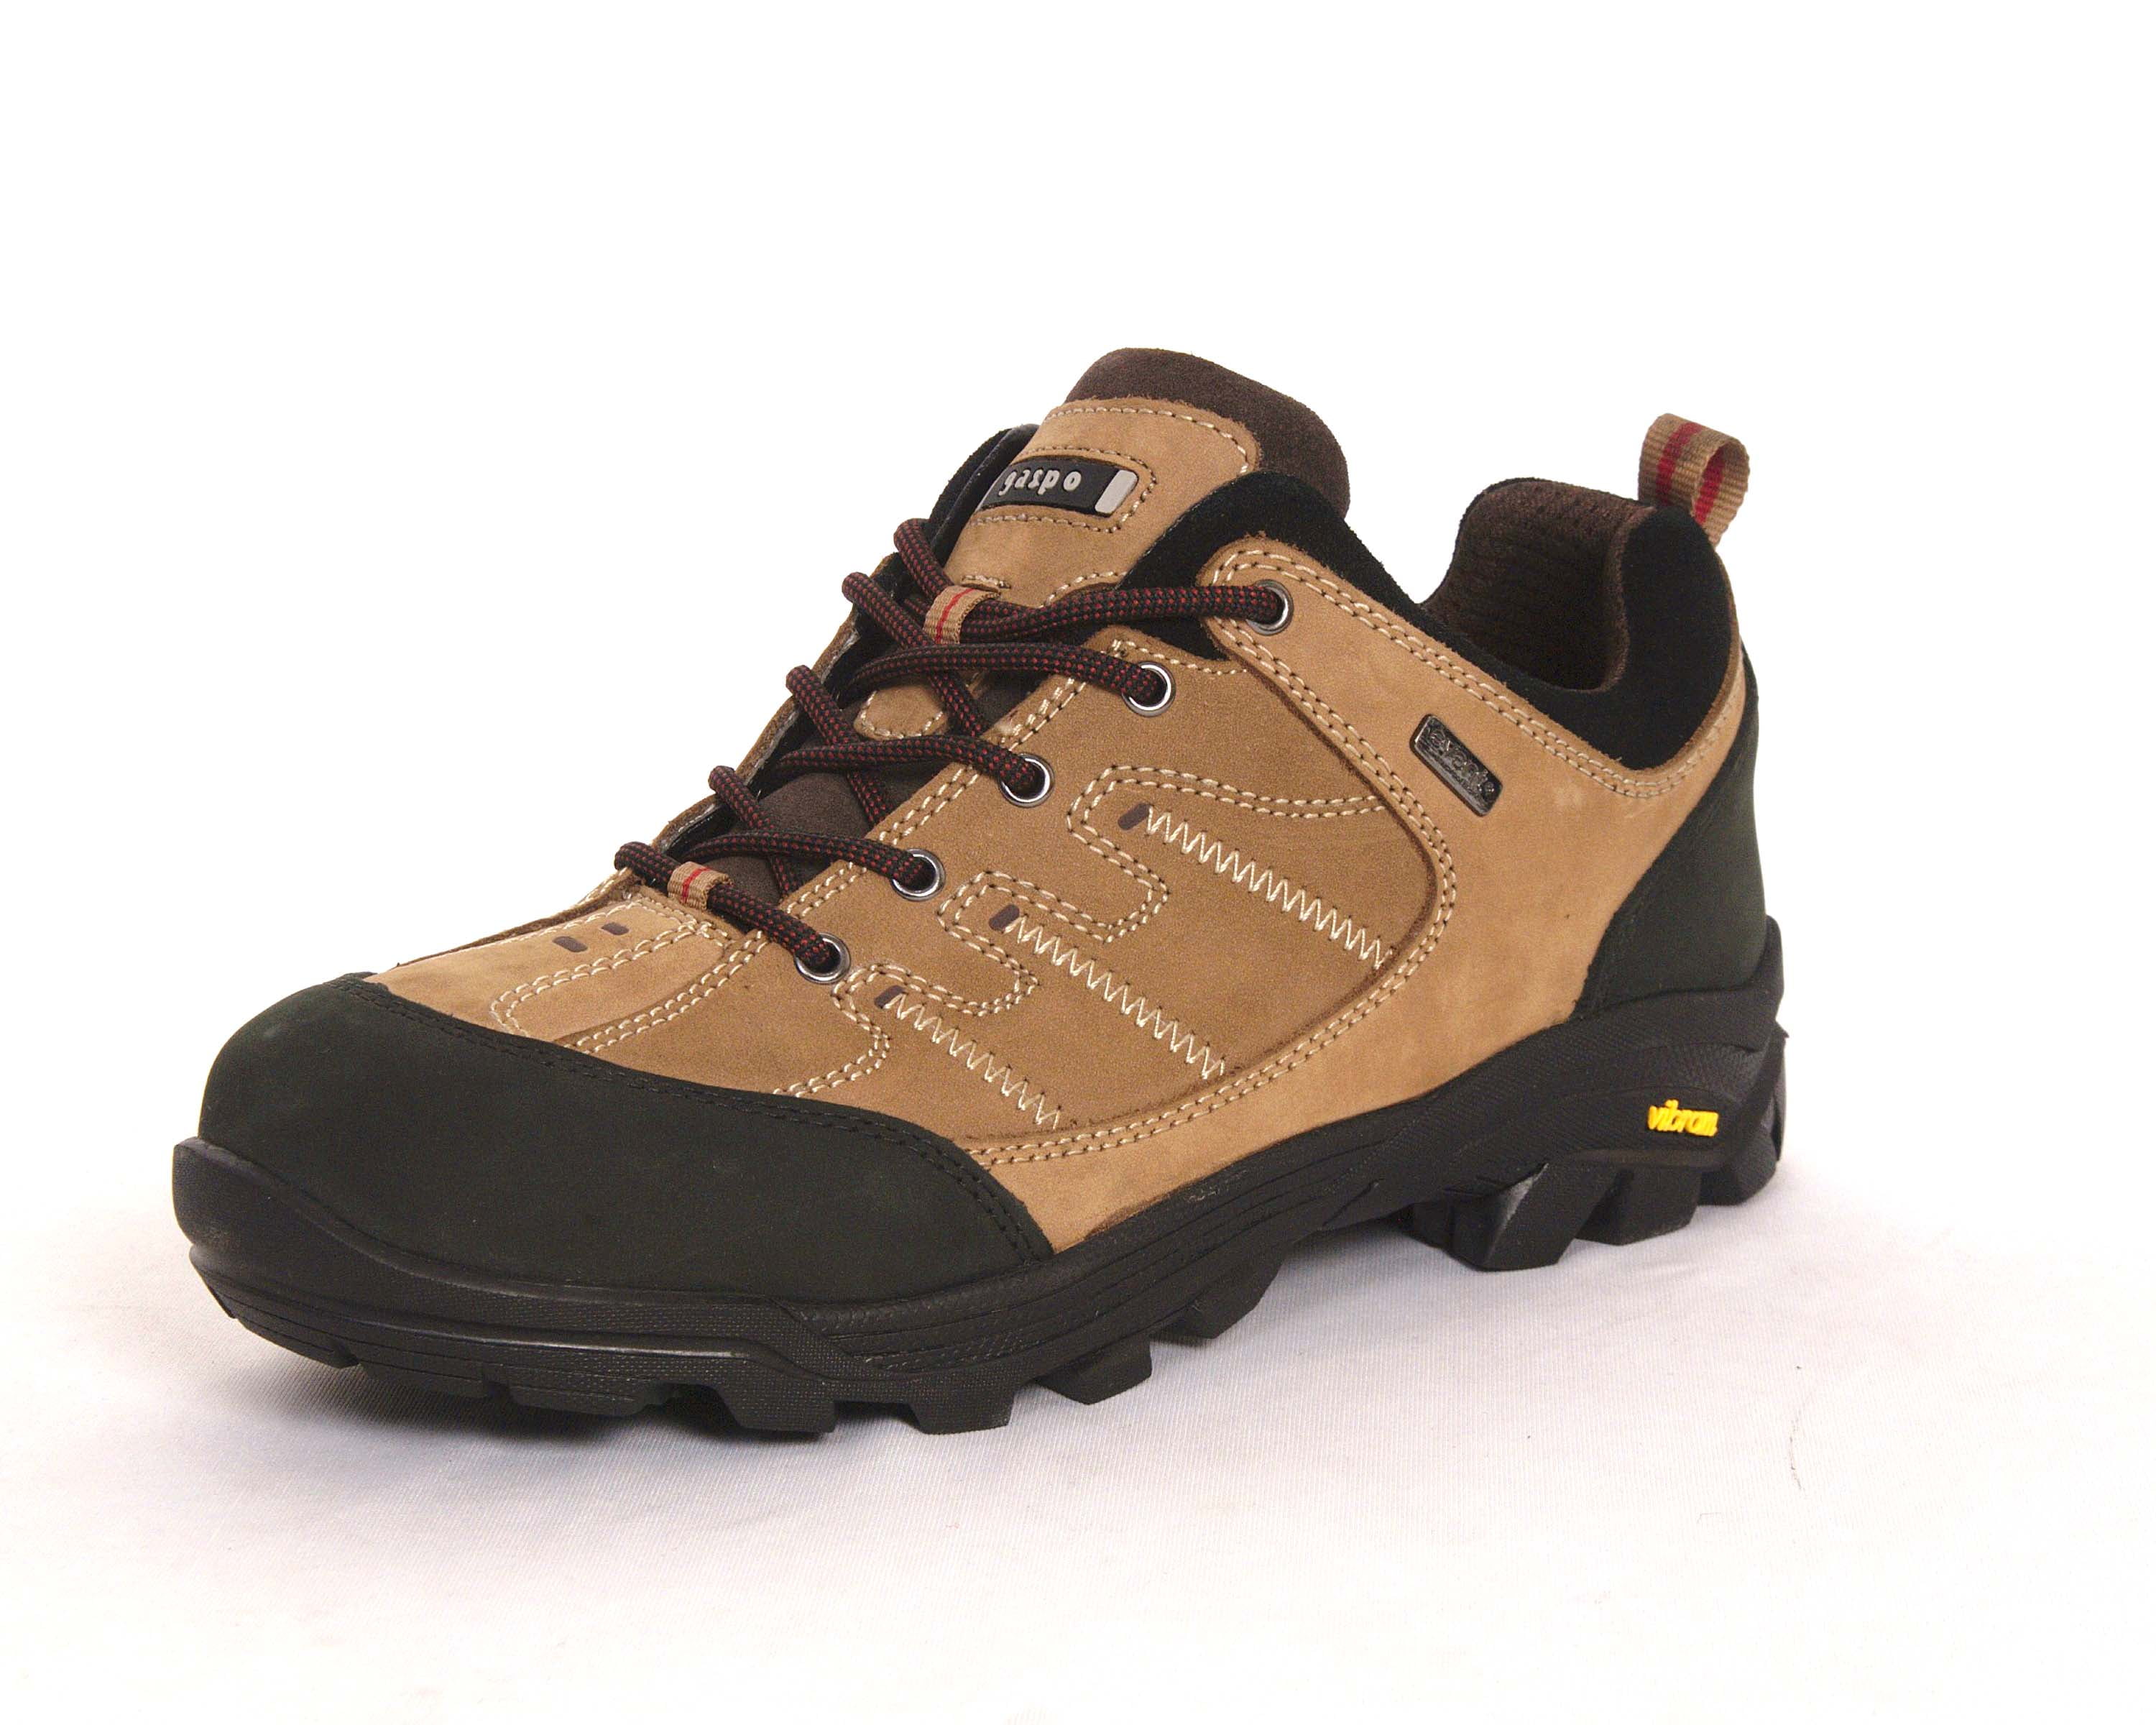 Gaspo Men's Vibram Sole Hiking Shoe US Size 8 M 